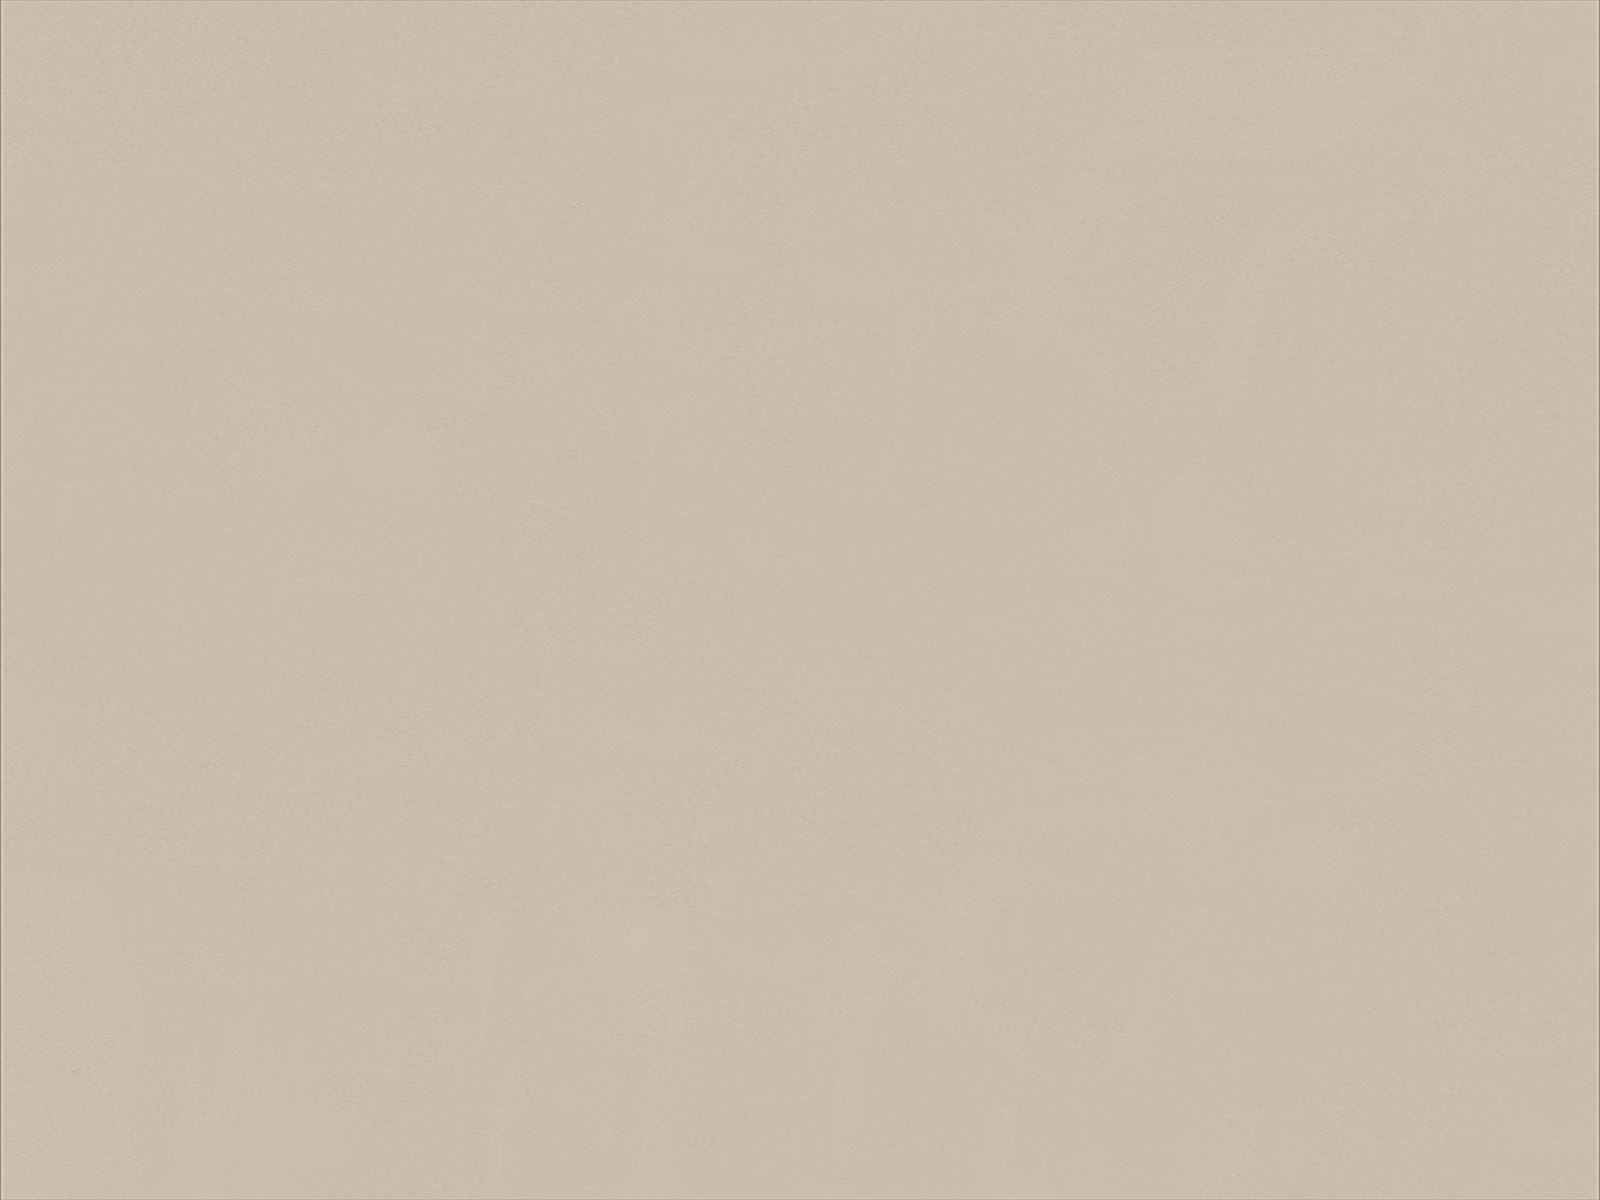 楽天市場 アイカ アイカ工業 オルティノ単色 Altyno 粘着剤付き化粧フィルム 粘着シート シートフィルム Diy 壁紙 クロス リフォームvkk 6114 メラミン化粧板専門店 メラポ